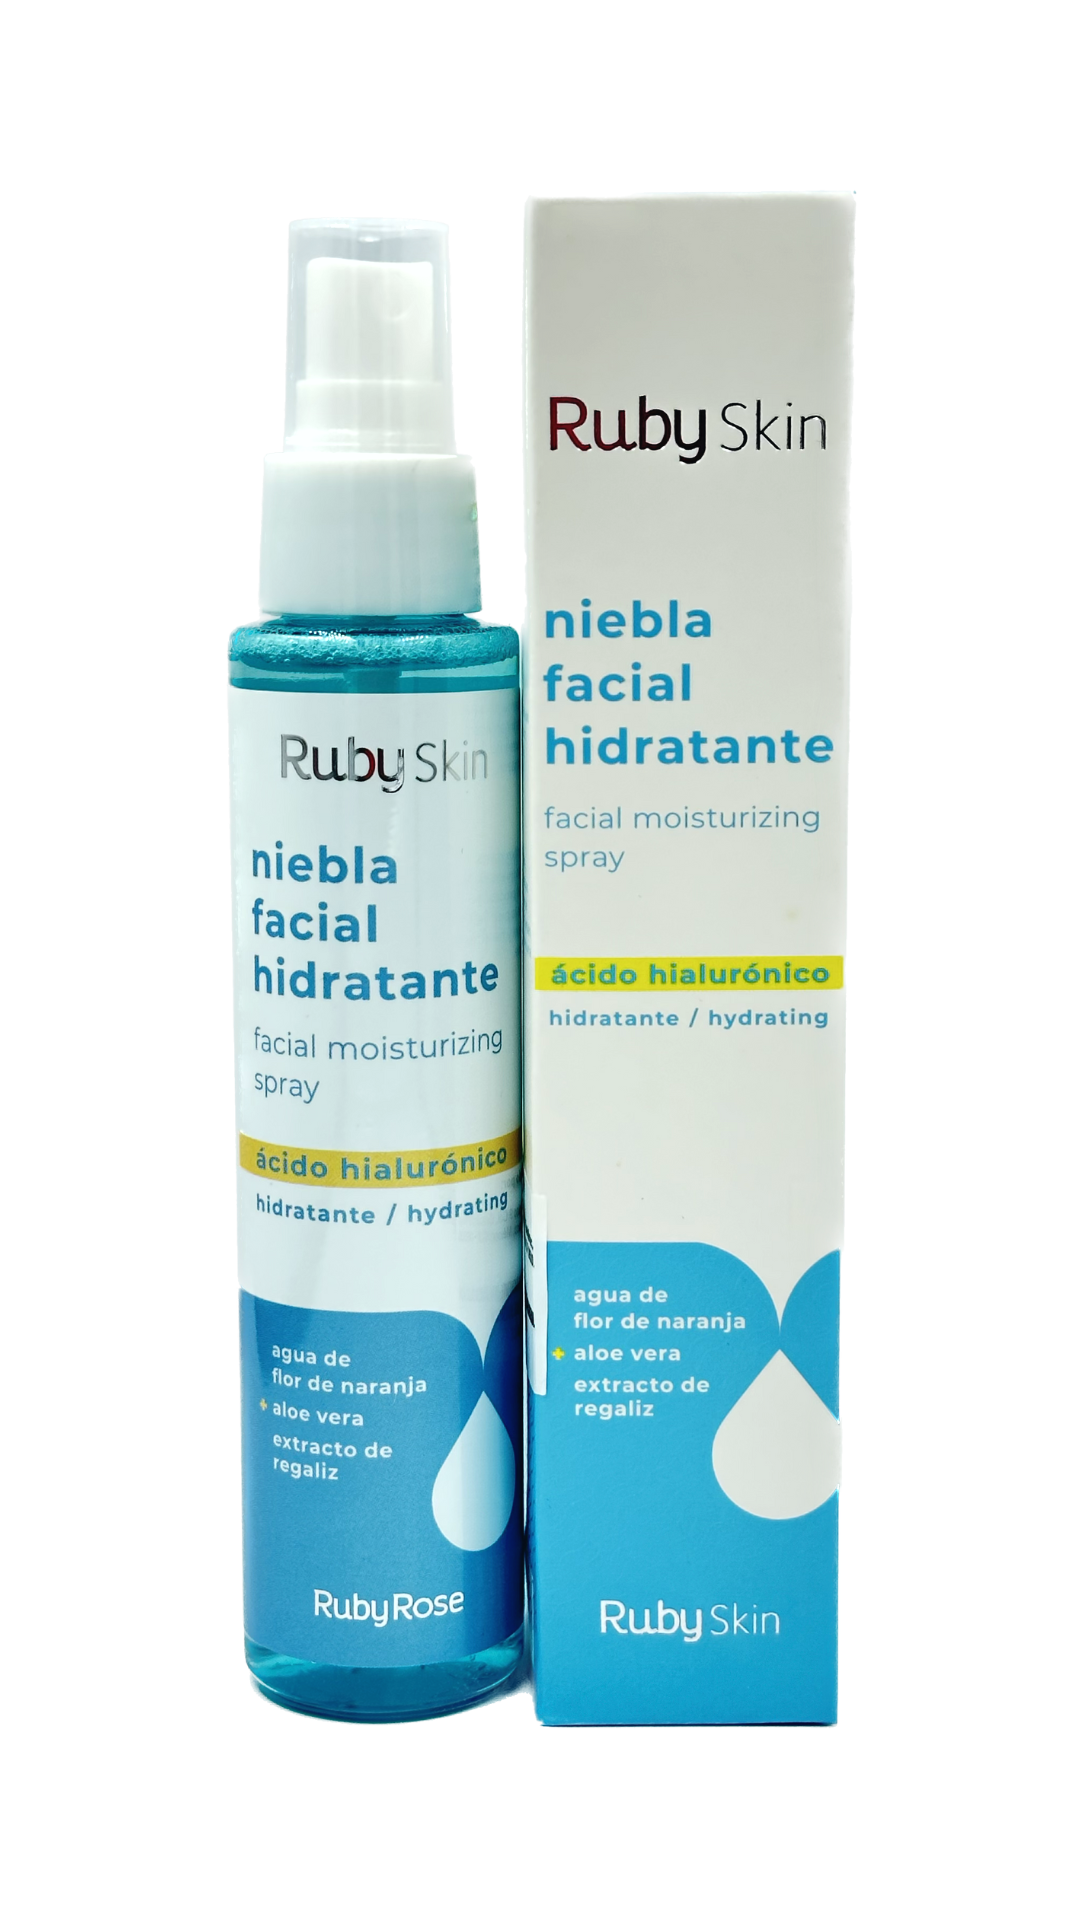 Espuma limpiadora desmaquillante facial con ácido hialurónico Ruby